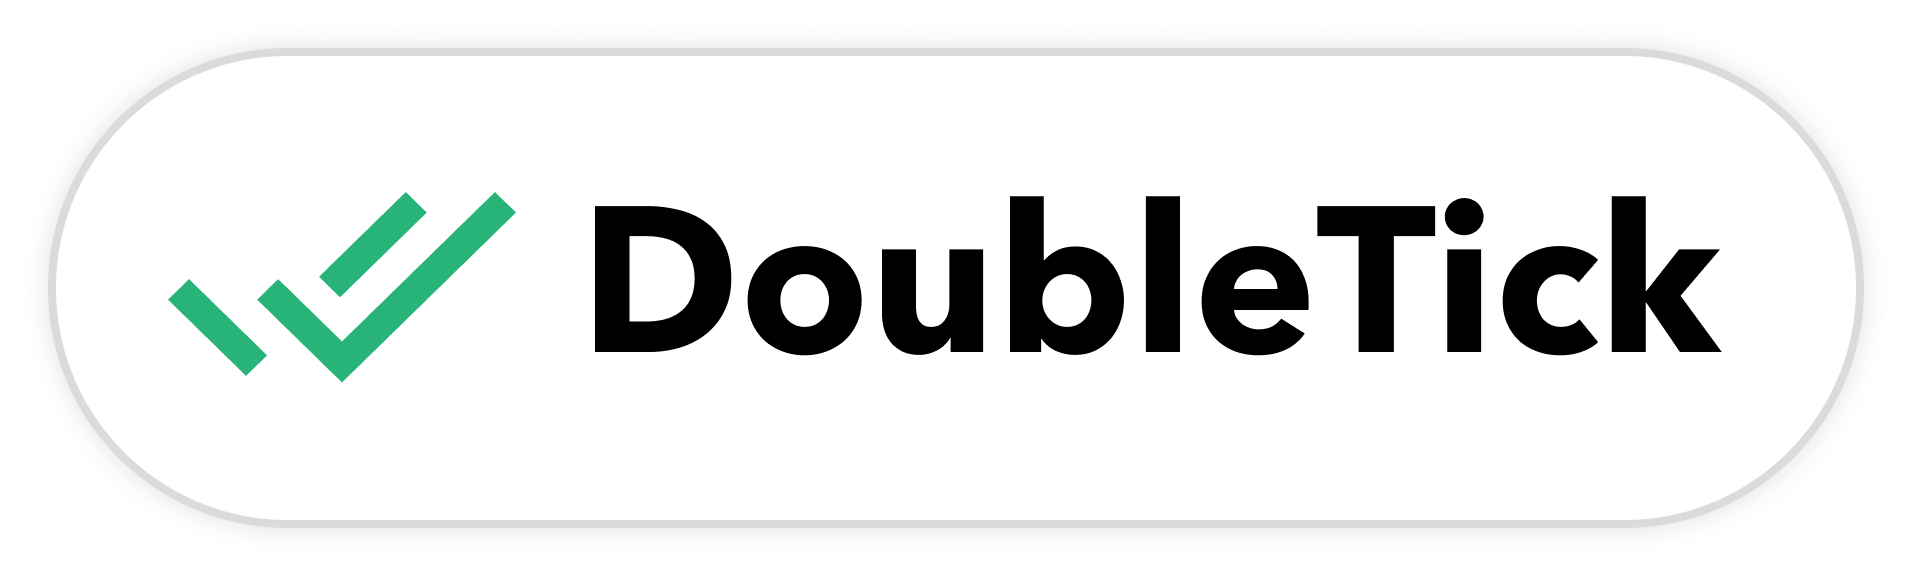 doubeltick logo